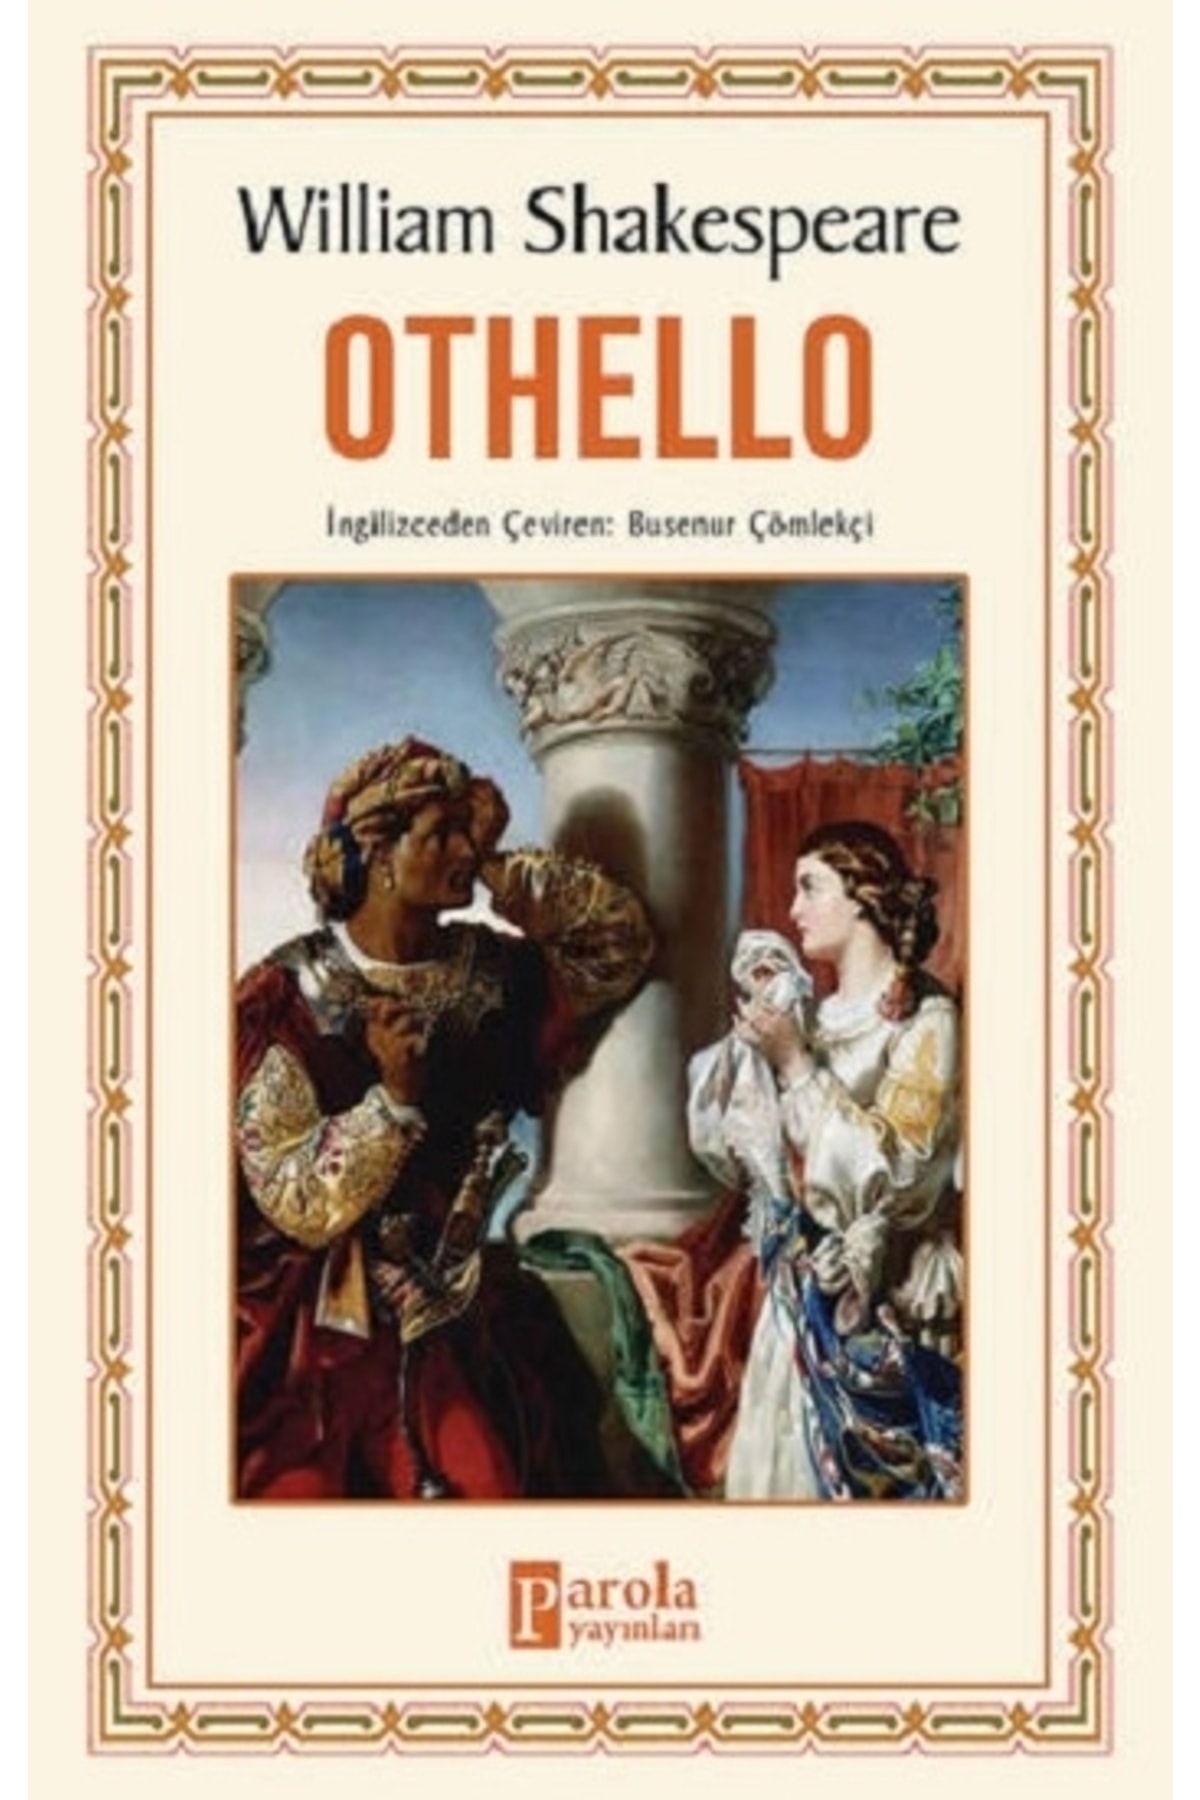 Parola Yayınları Othello